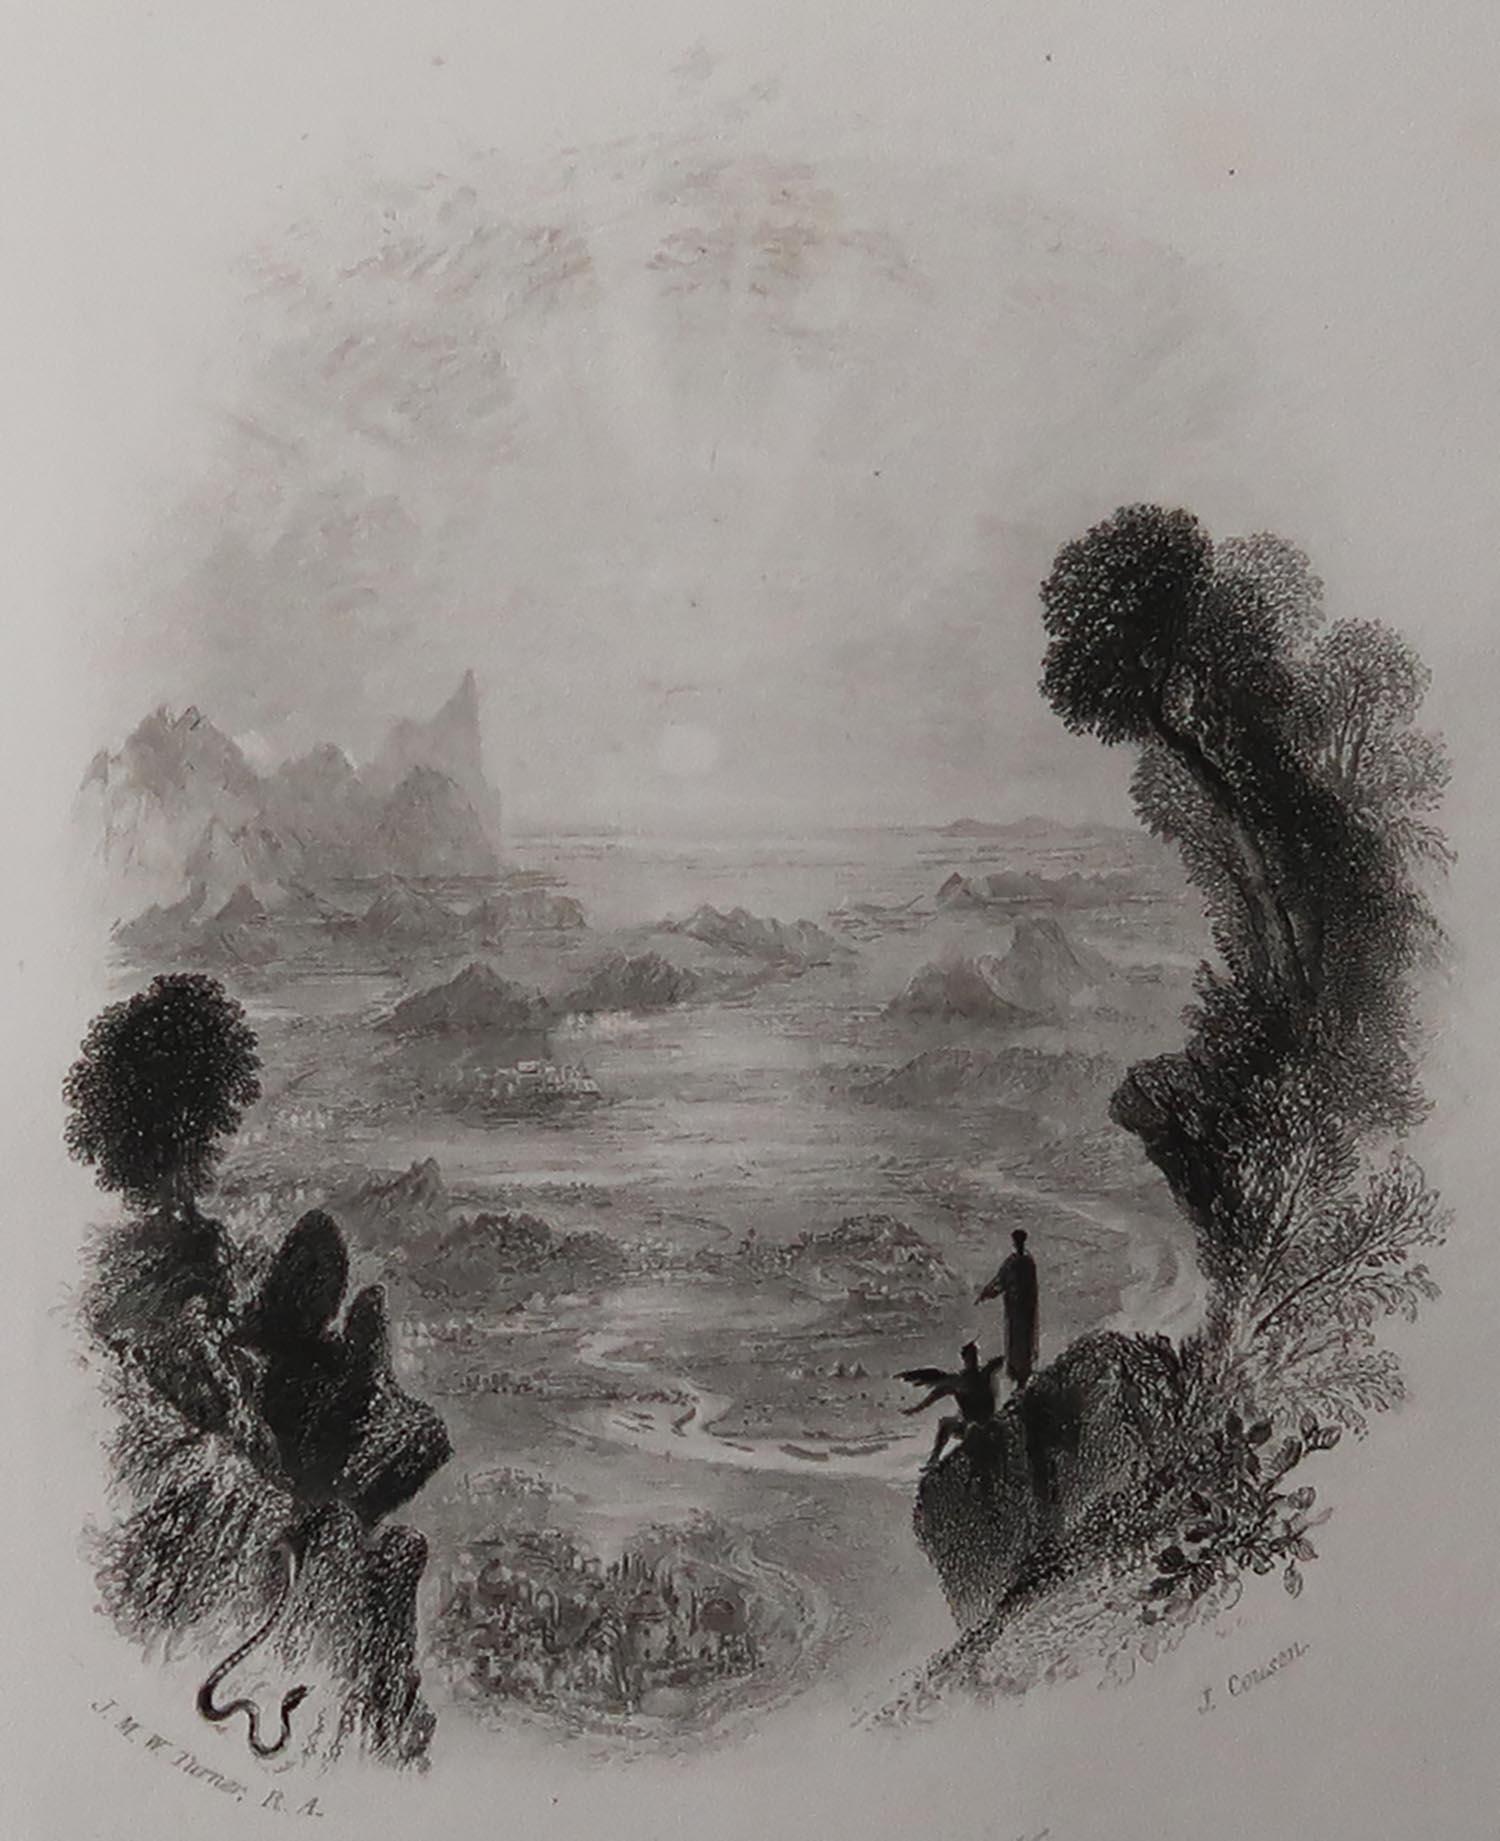 Image sensationnelle d'après un dessin de J.M.W Turner

Gravure sur acier de Goodall.

Extrait des 